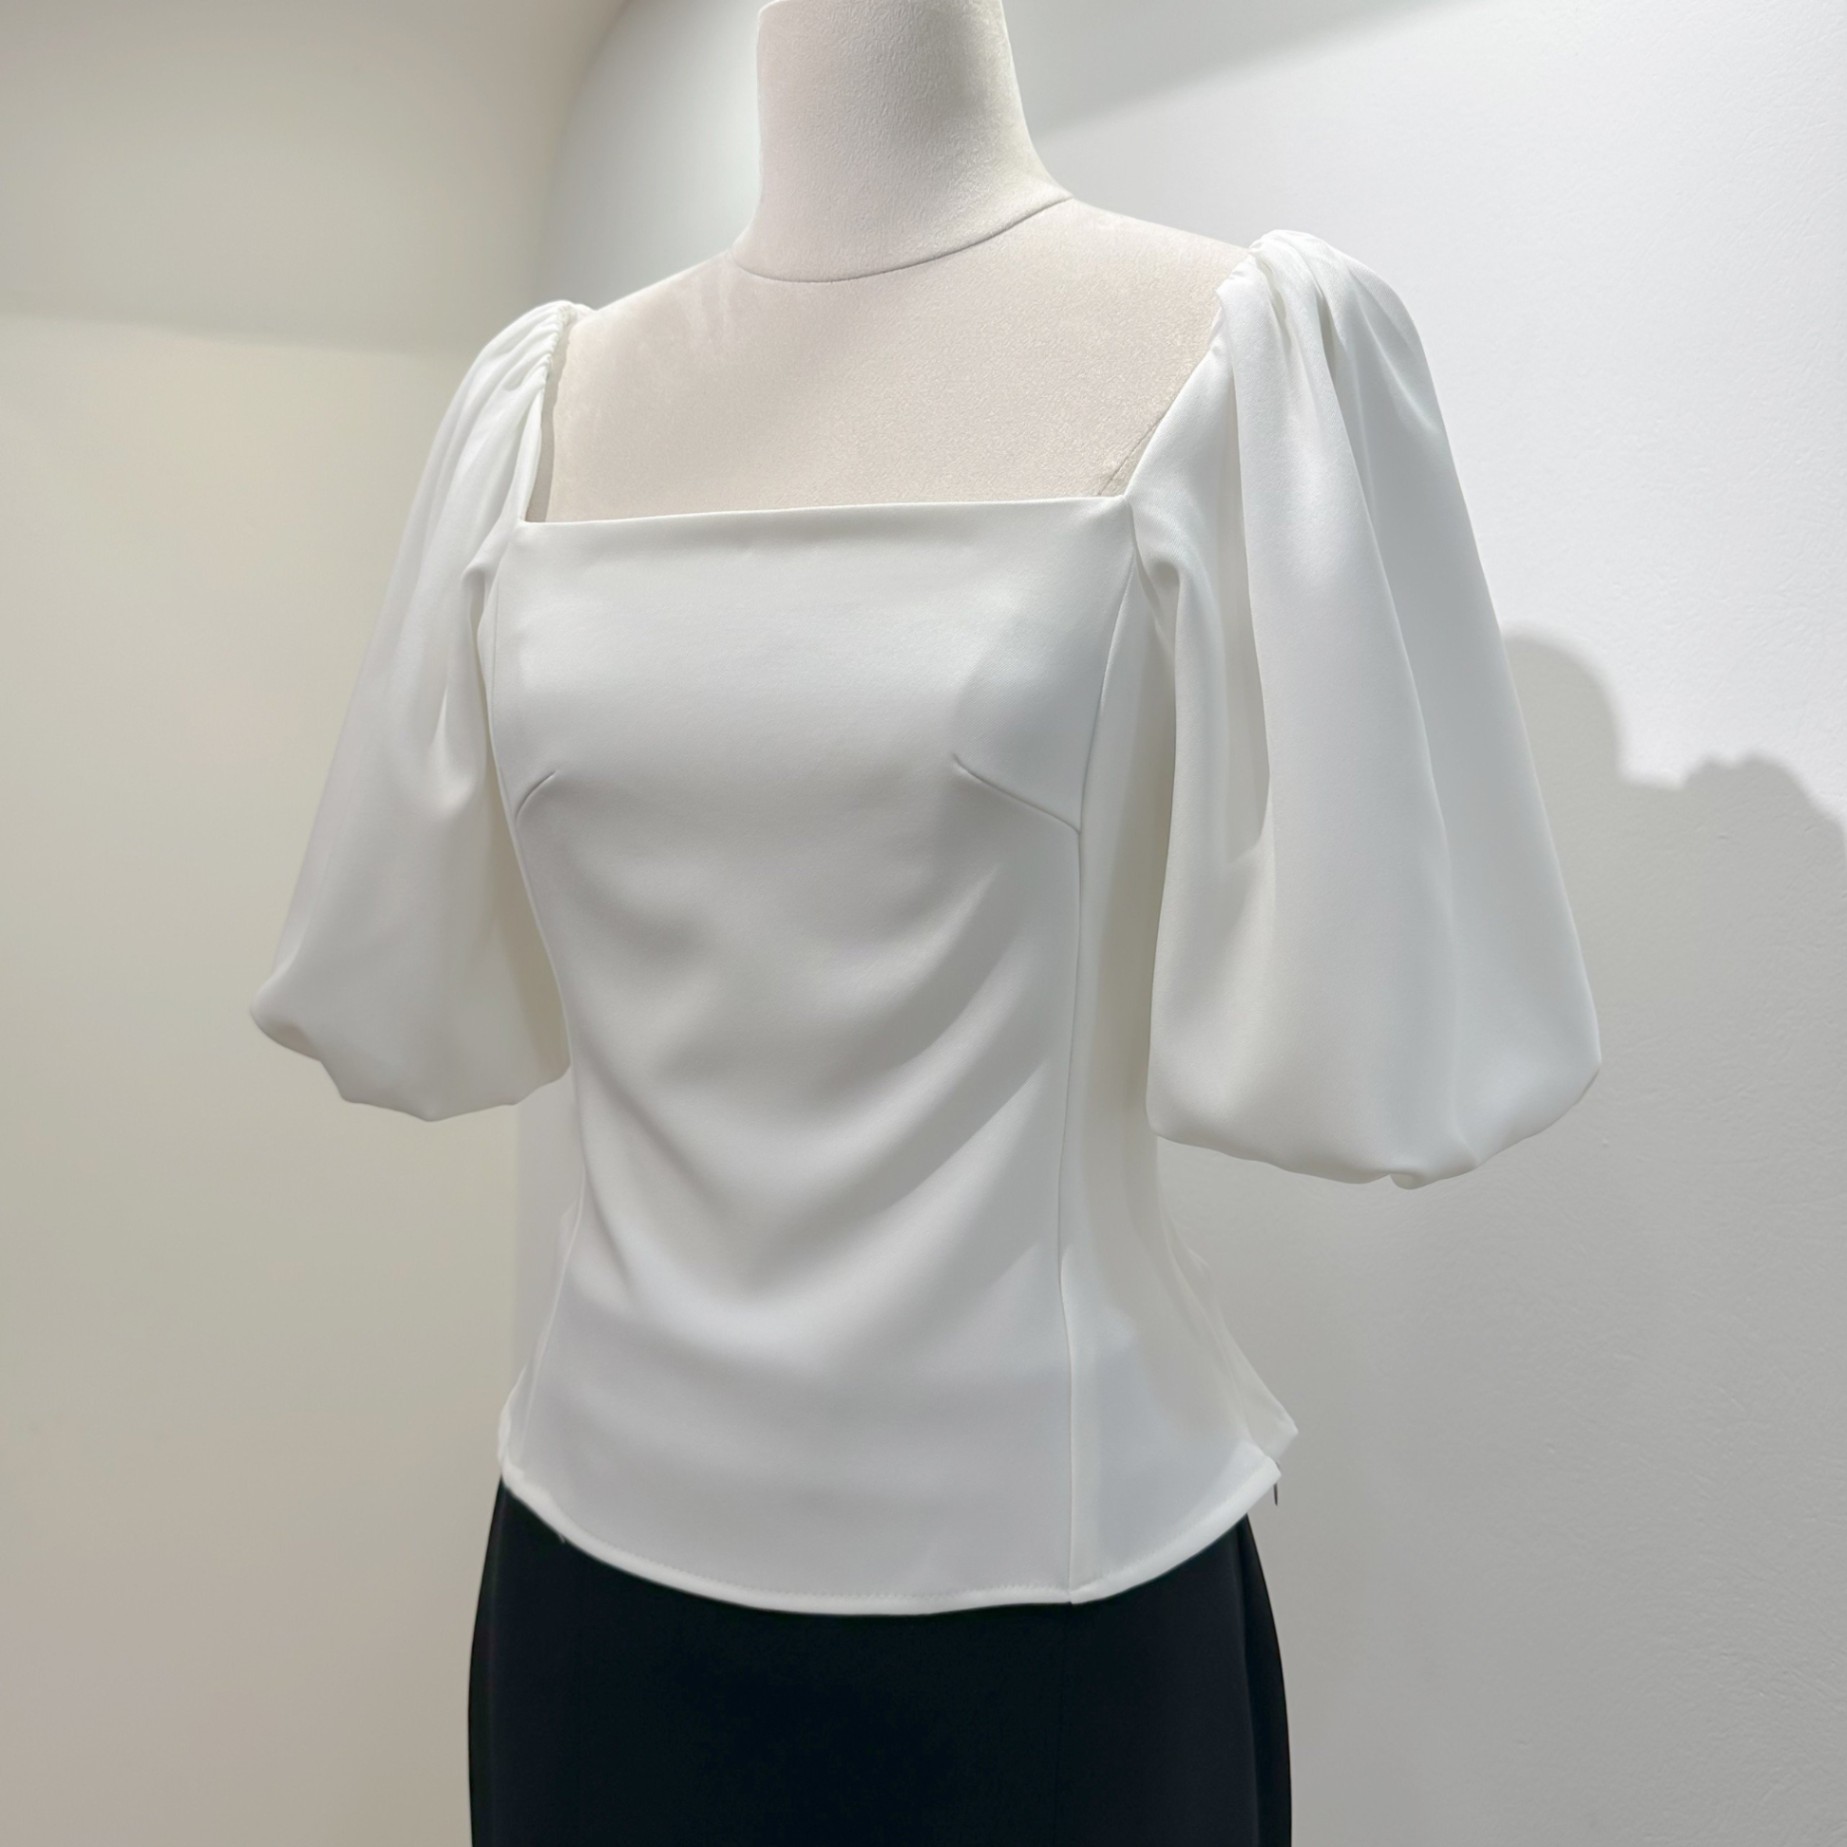 Váy nữ thiết kế makka váy tafta đen cổ vuông phối cúc ngọc tay trắng bồng  598